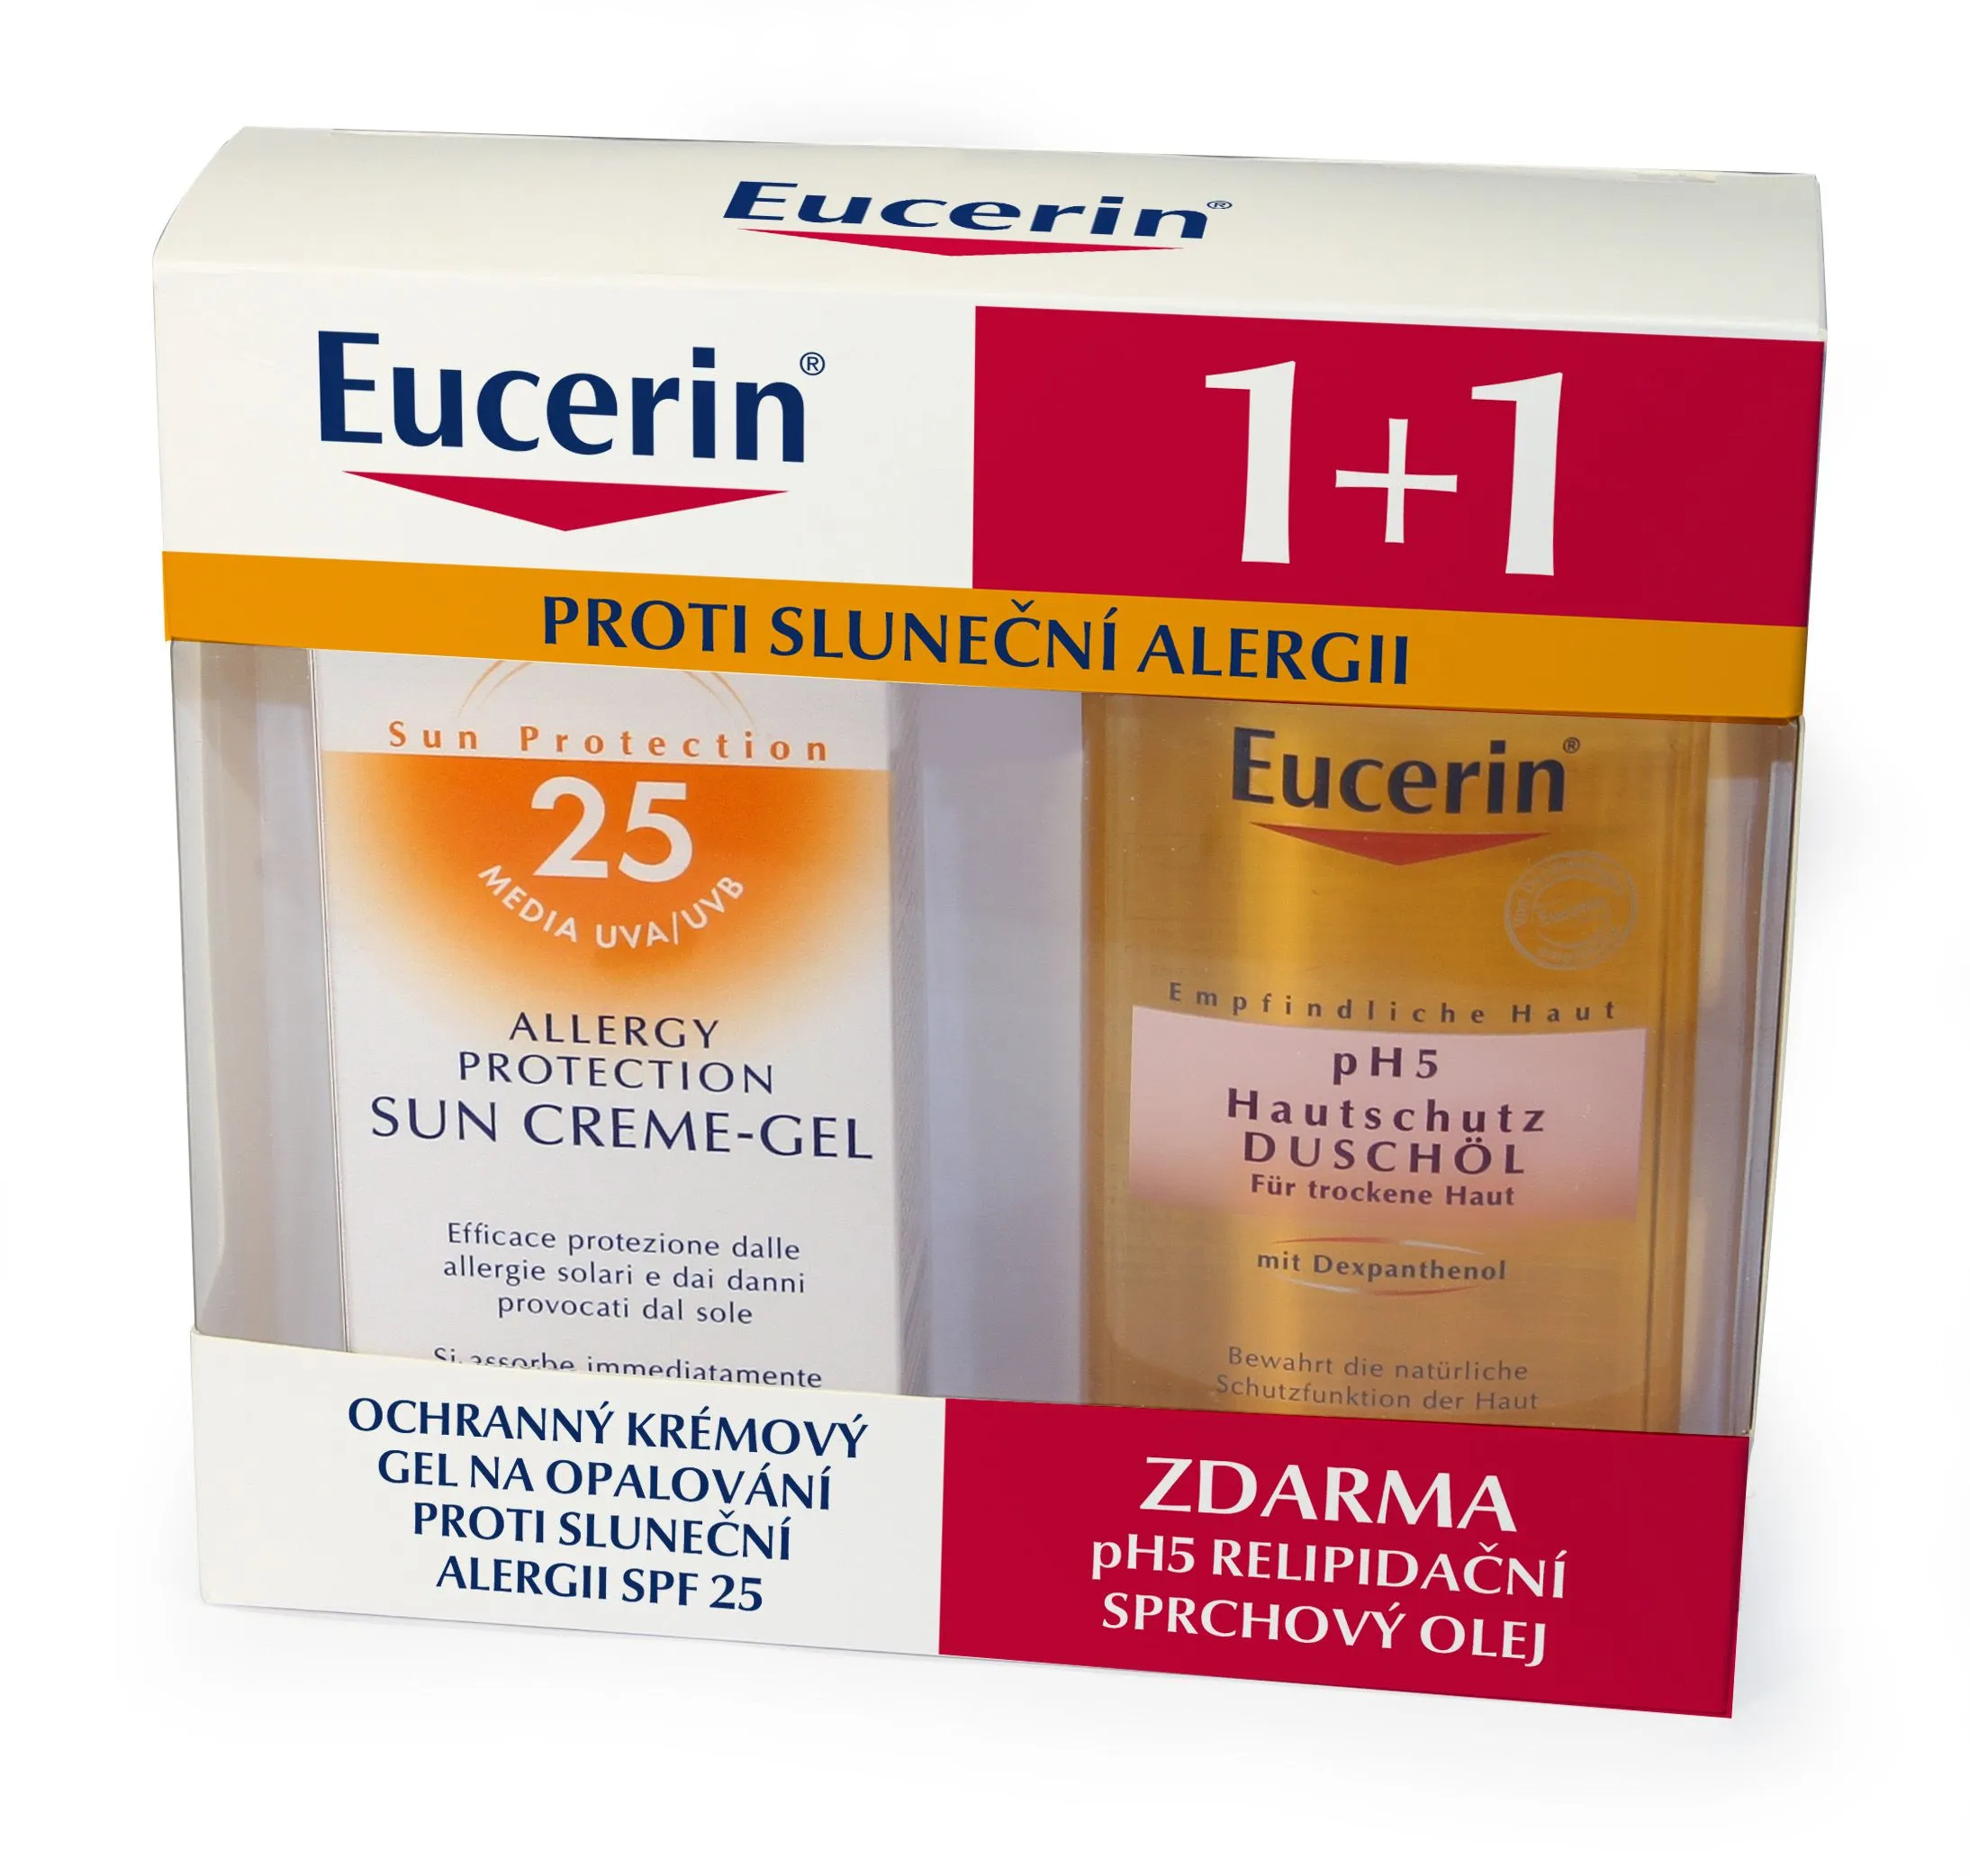 EUCERIN SUN 1+1 Krémový gel na opalování proti sluneč. alergii SPF25 150ml + Relipidační sprch.olej pH5 200ml